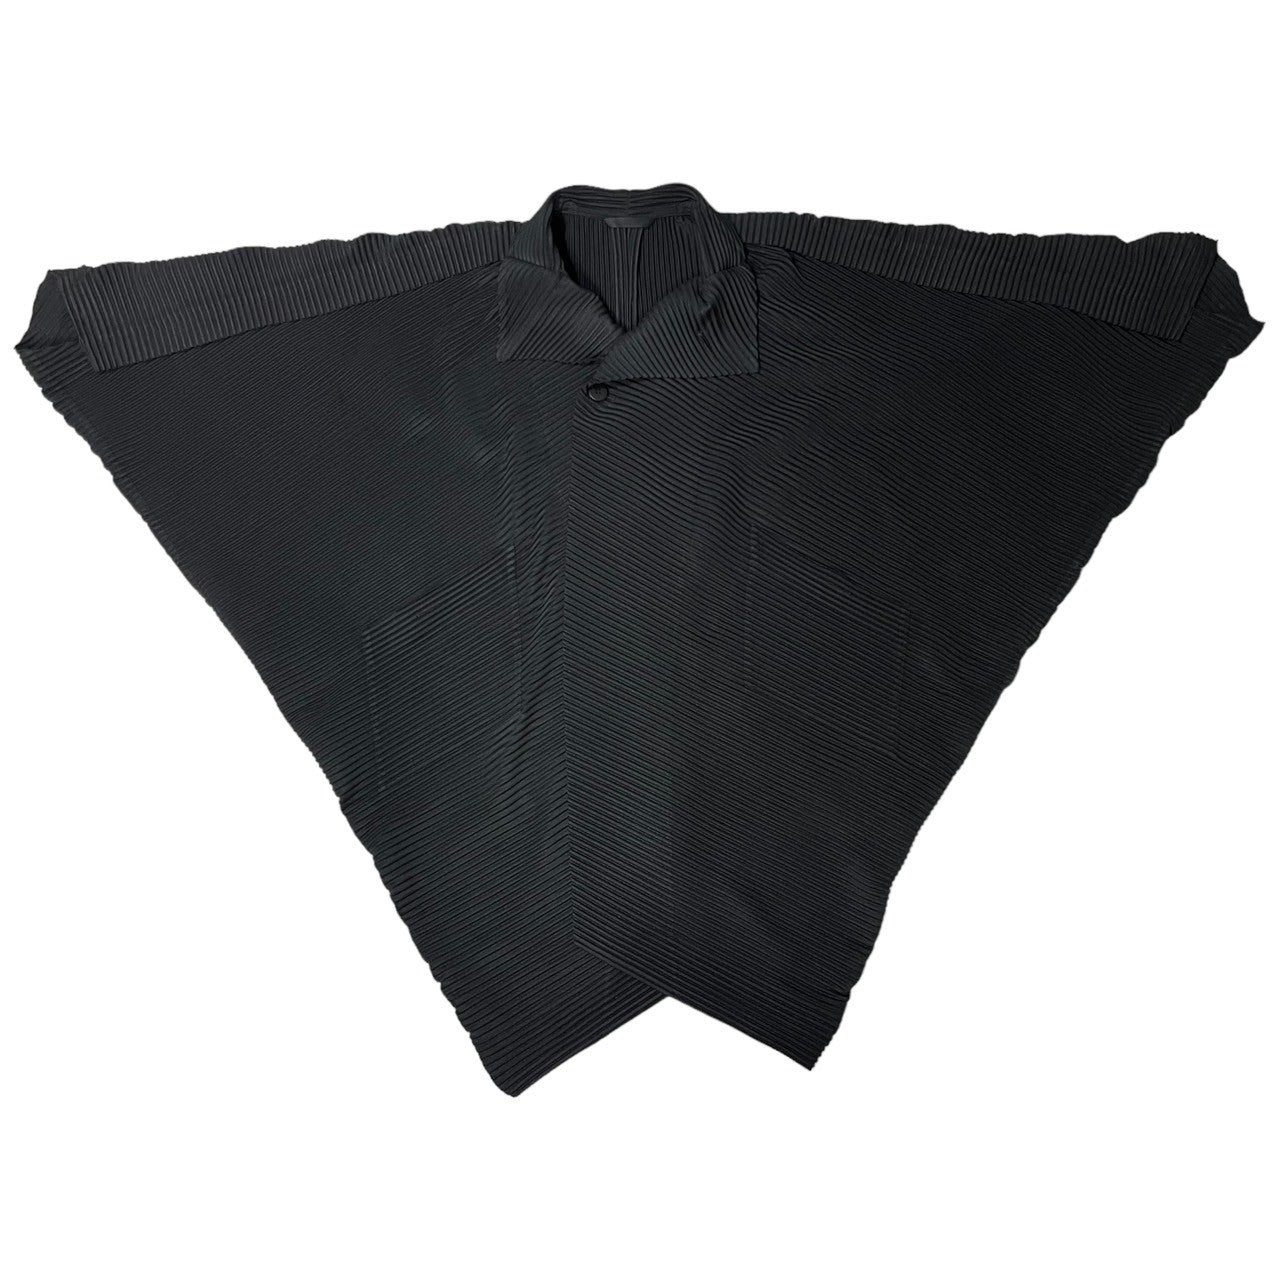 HOMME PLISSE ISSEY MIYAKE(オムプリッセイッセイミヤケ) 23AW pleated stand collar coat プリーツ スタンドカラー コート イカコート HP23JA111/1 SIZE 1(S) ブラック